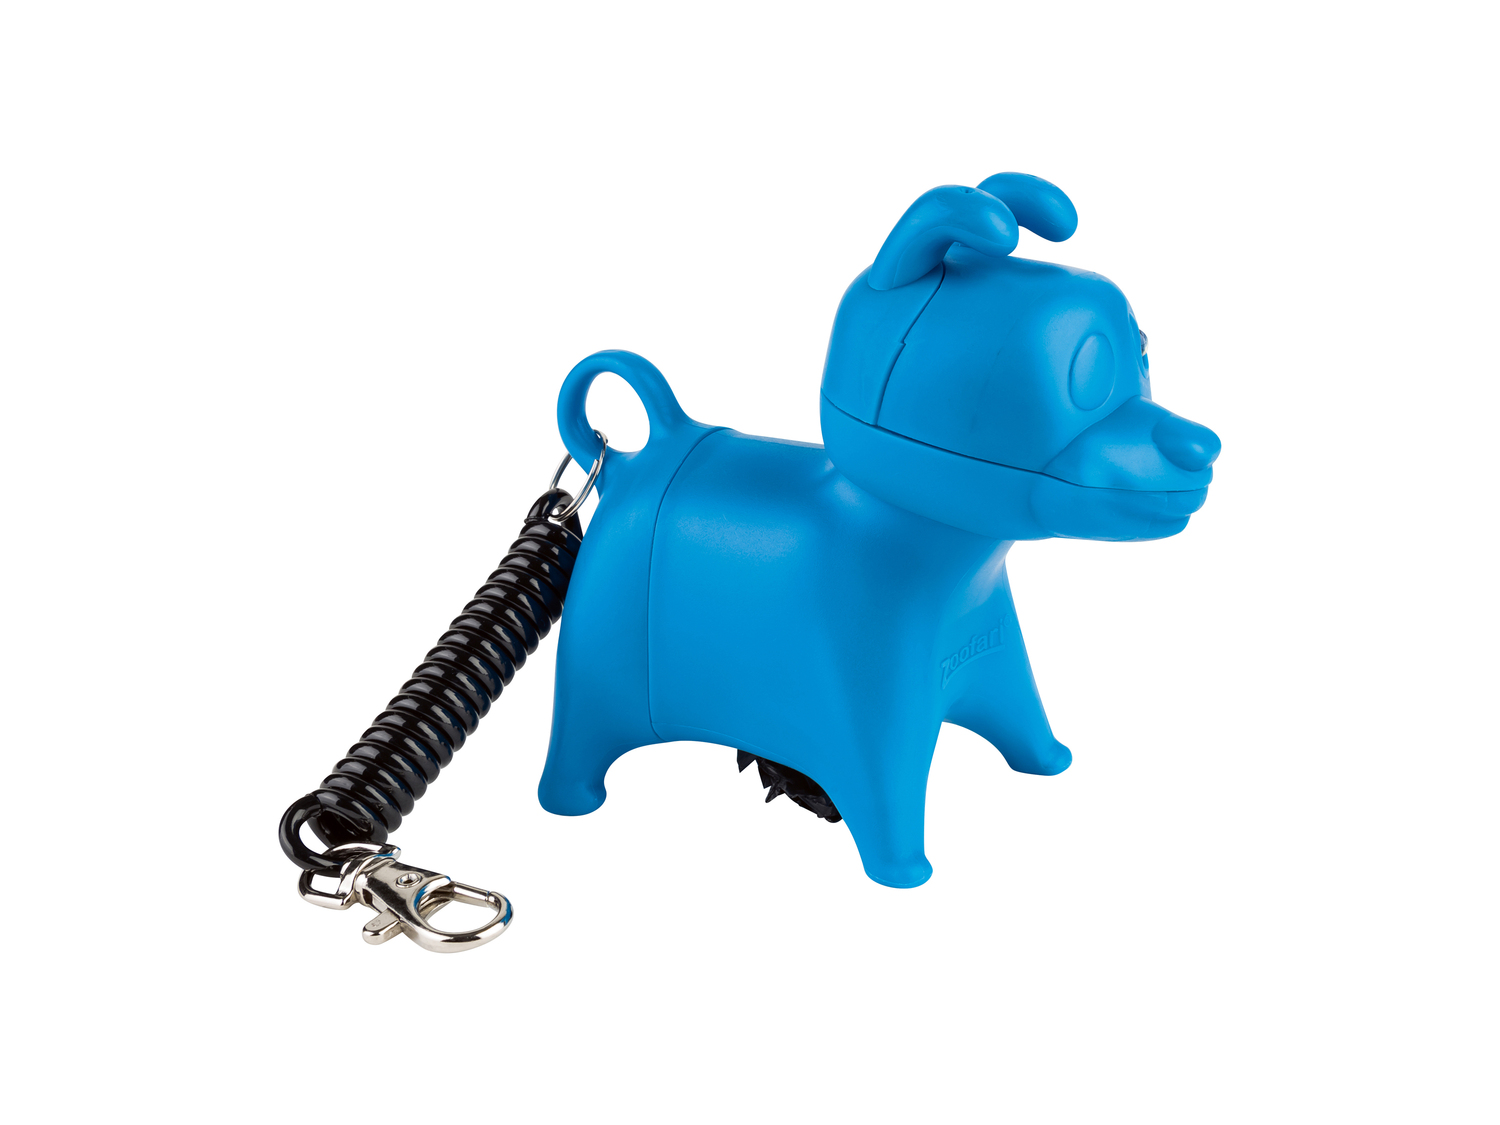 Portasacchetti per cani Zoofari, prezzo 2.49 &#8364; 
- Con luce LED
- Rotolo ...